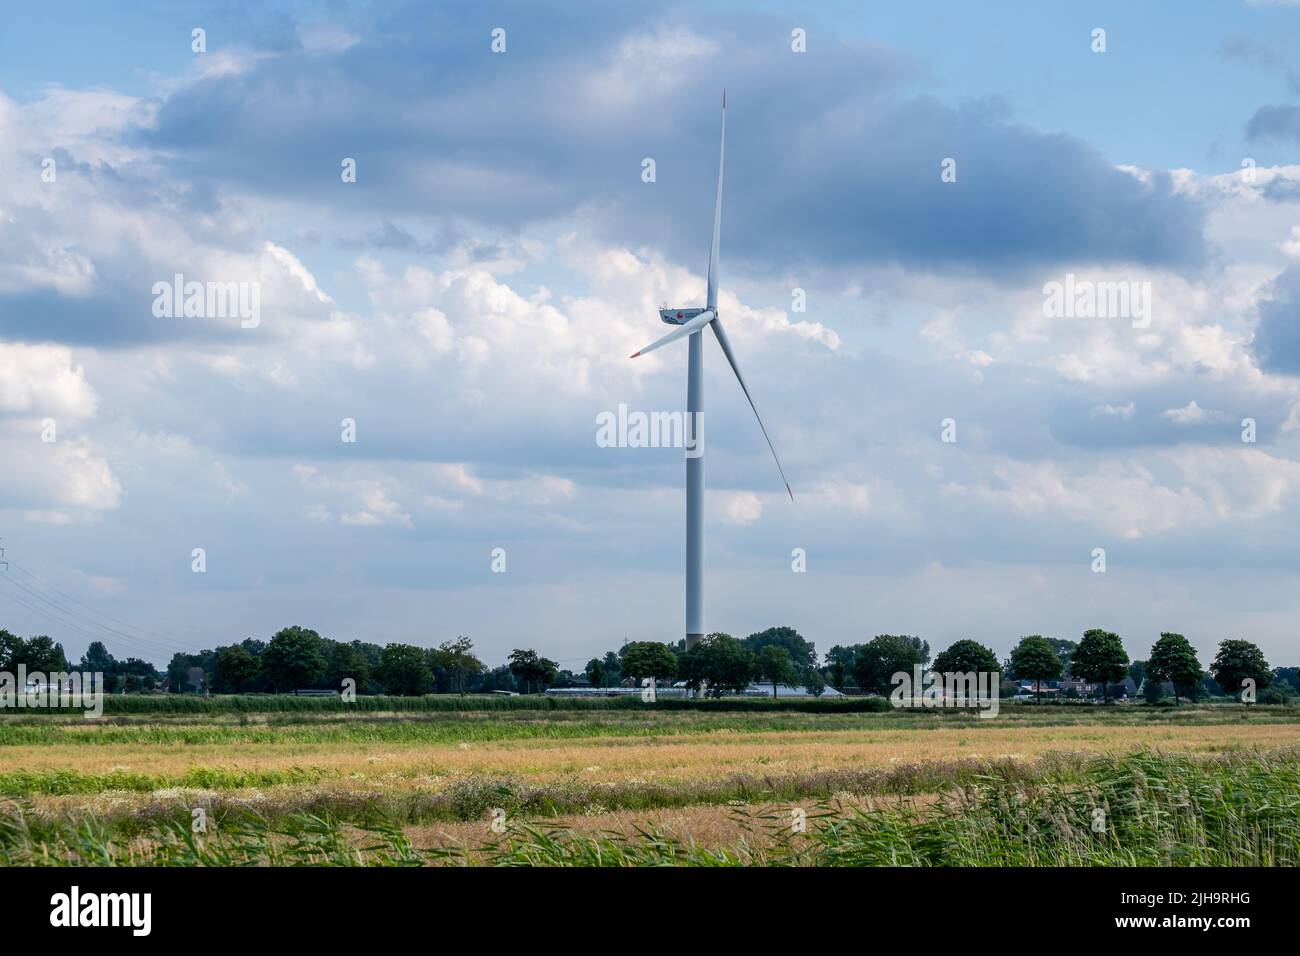 Hamburgo, Alemania - 07 04 2022: Vista de un campo de grano con un aerogenerador Hamburg Energie frente a un cielo nublado Foto de stock